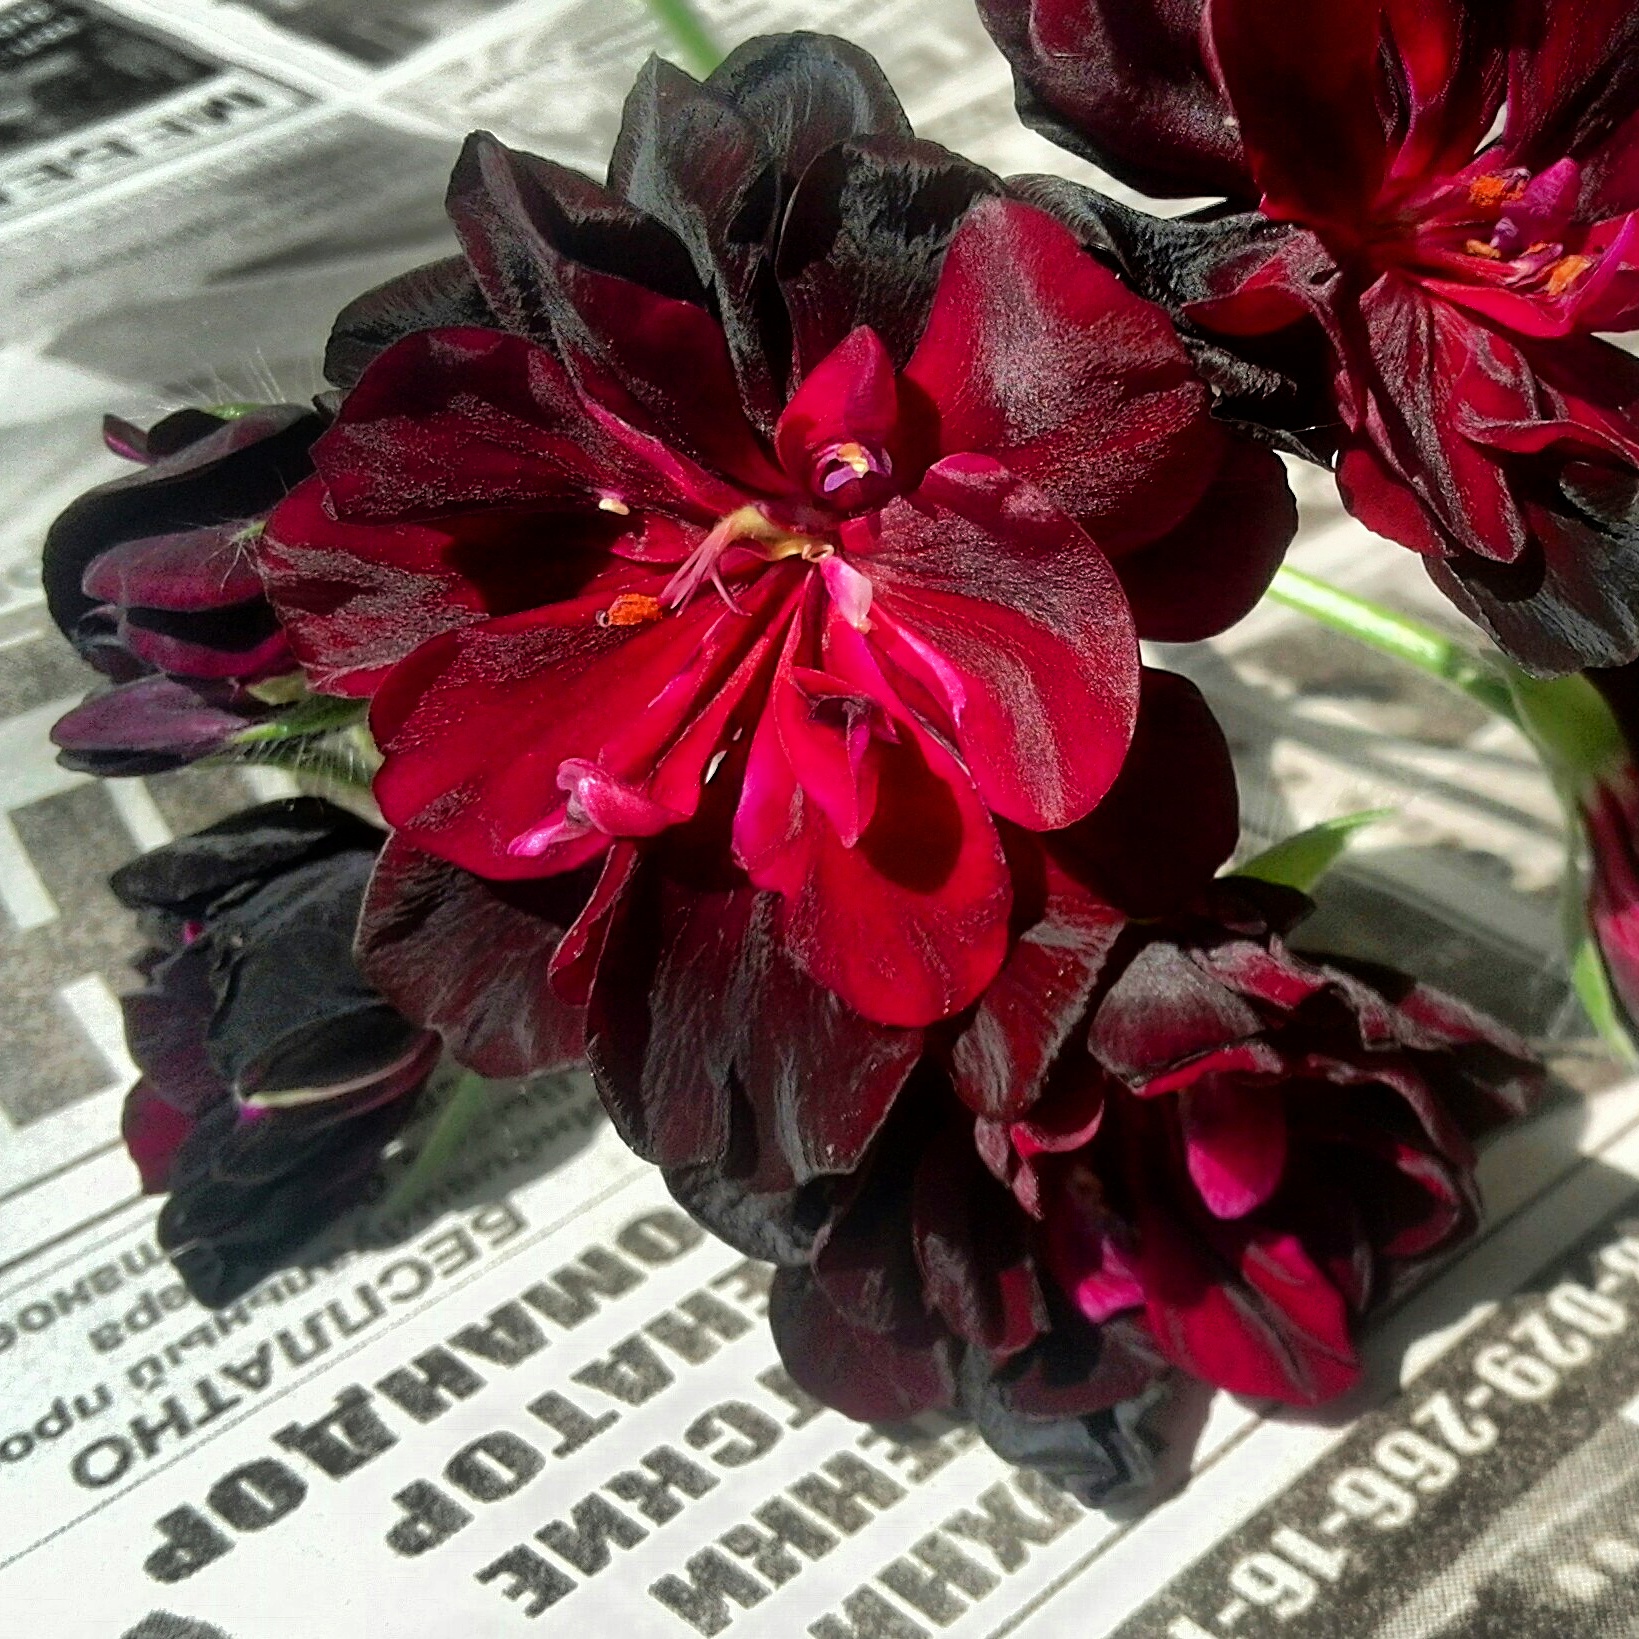 Pelargonium at geranium: ang pagkakaiba sa pagitan ng mga halaman